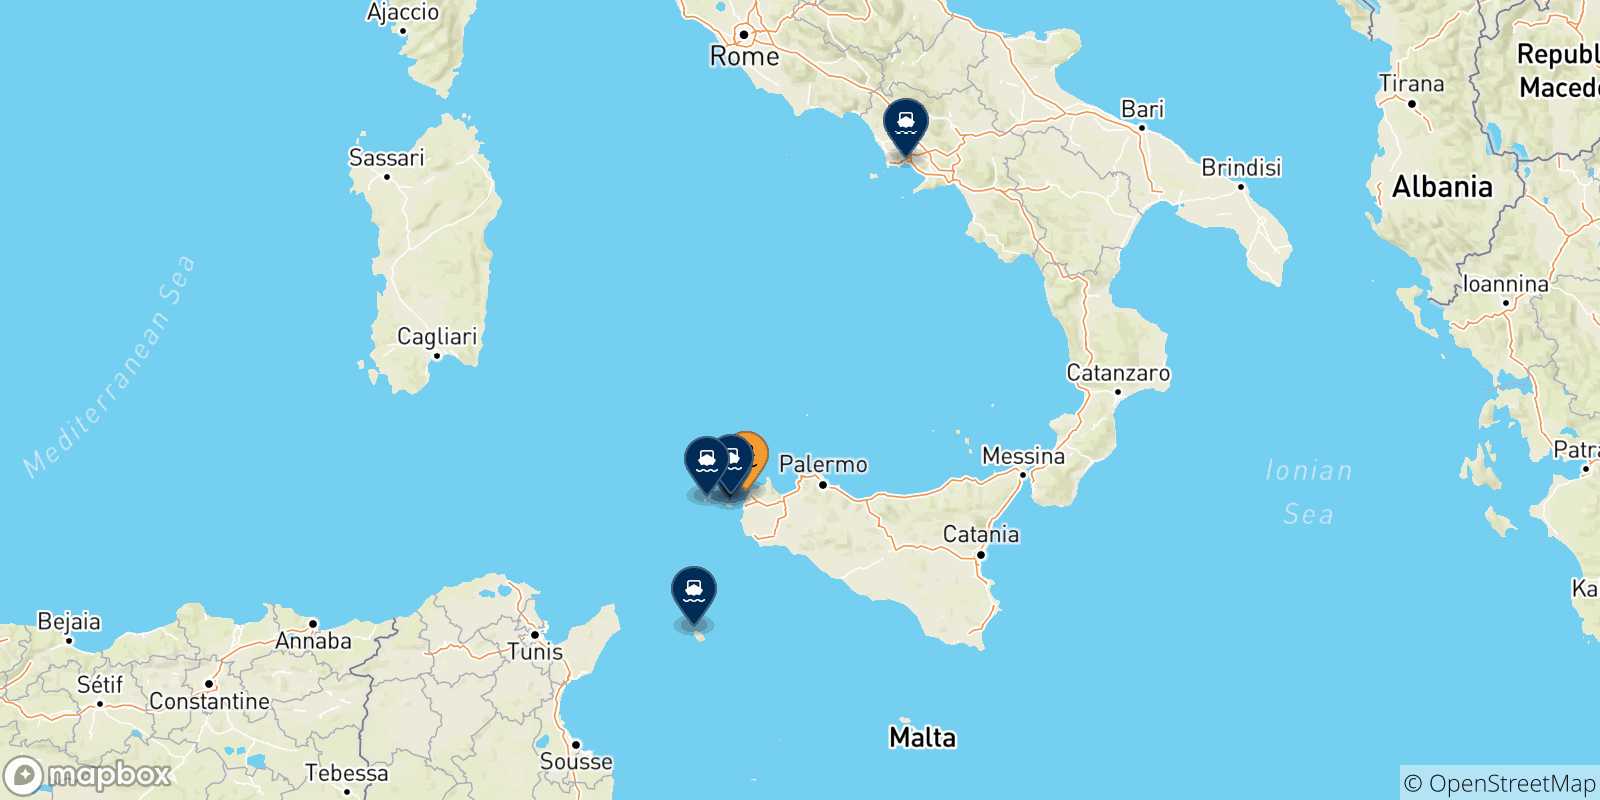 Mappa delle possibili rotte tra Trapani e l'Italia